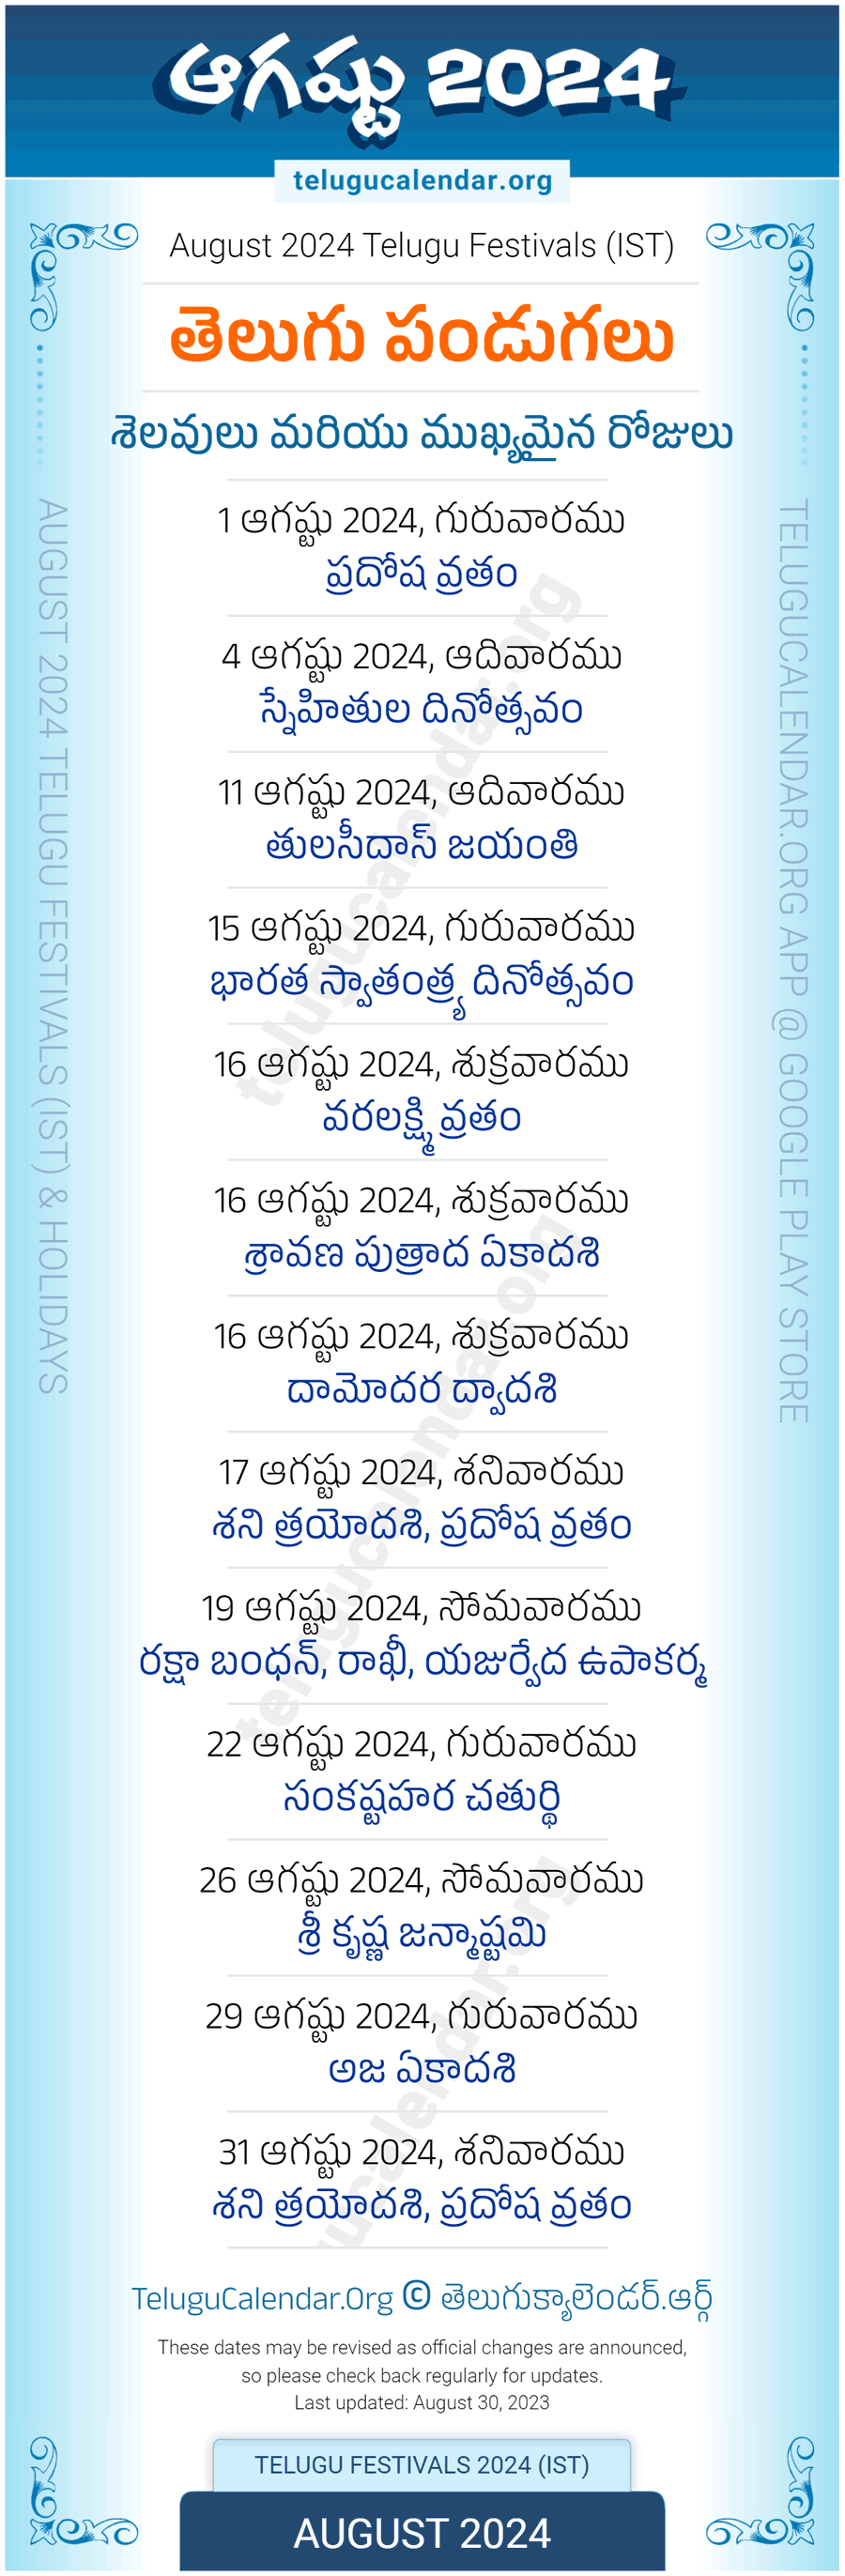 Telugu Festivals 2024 August